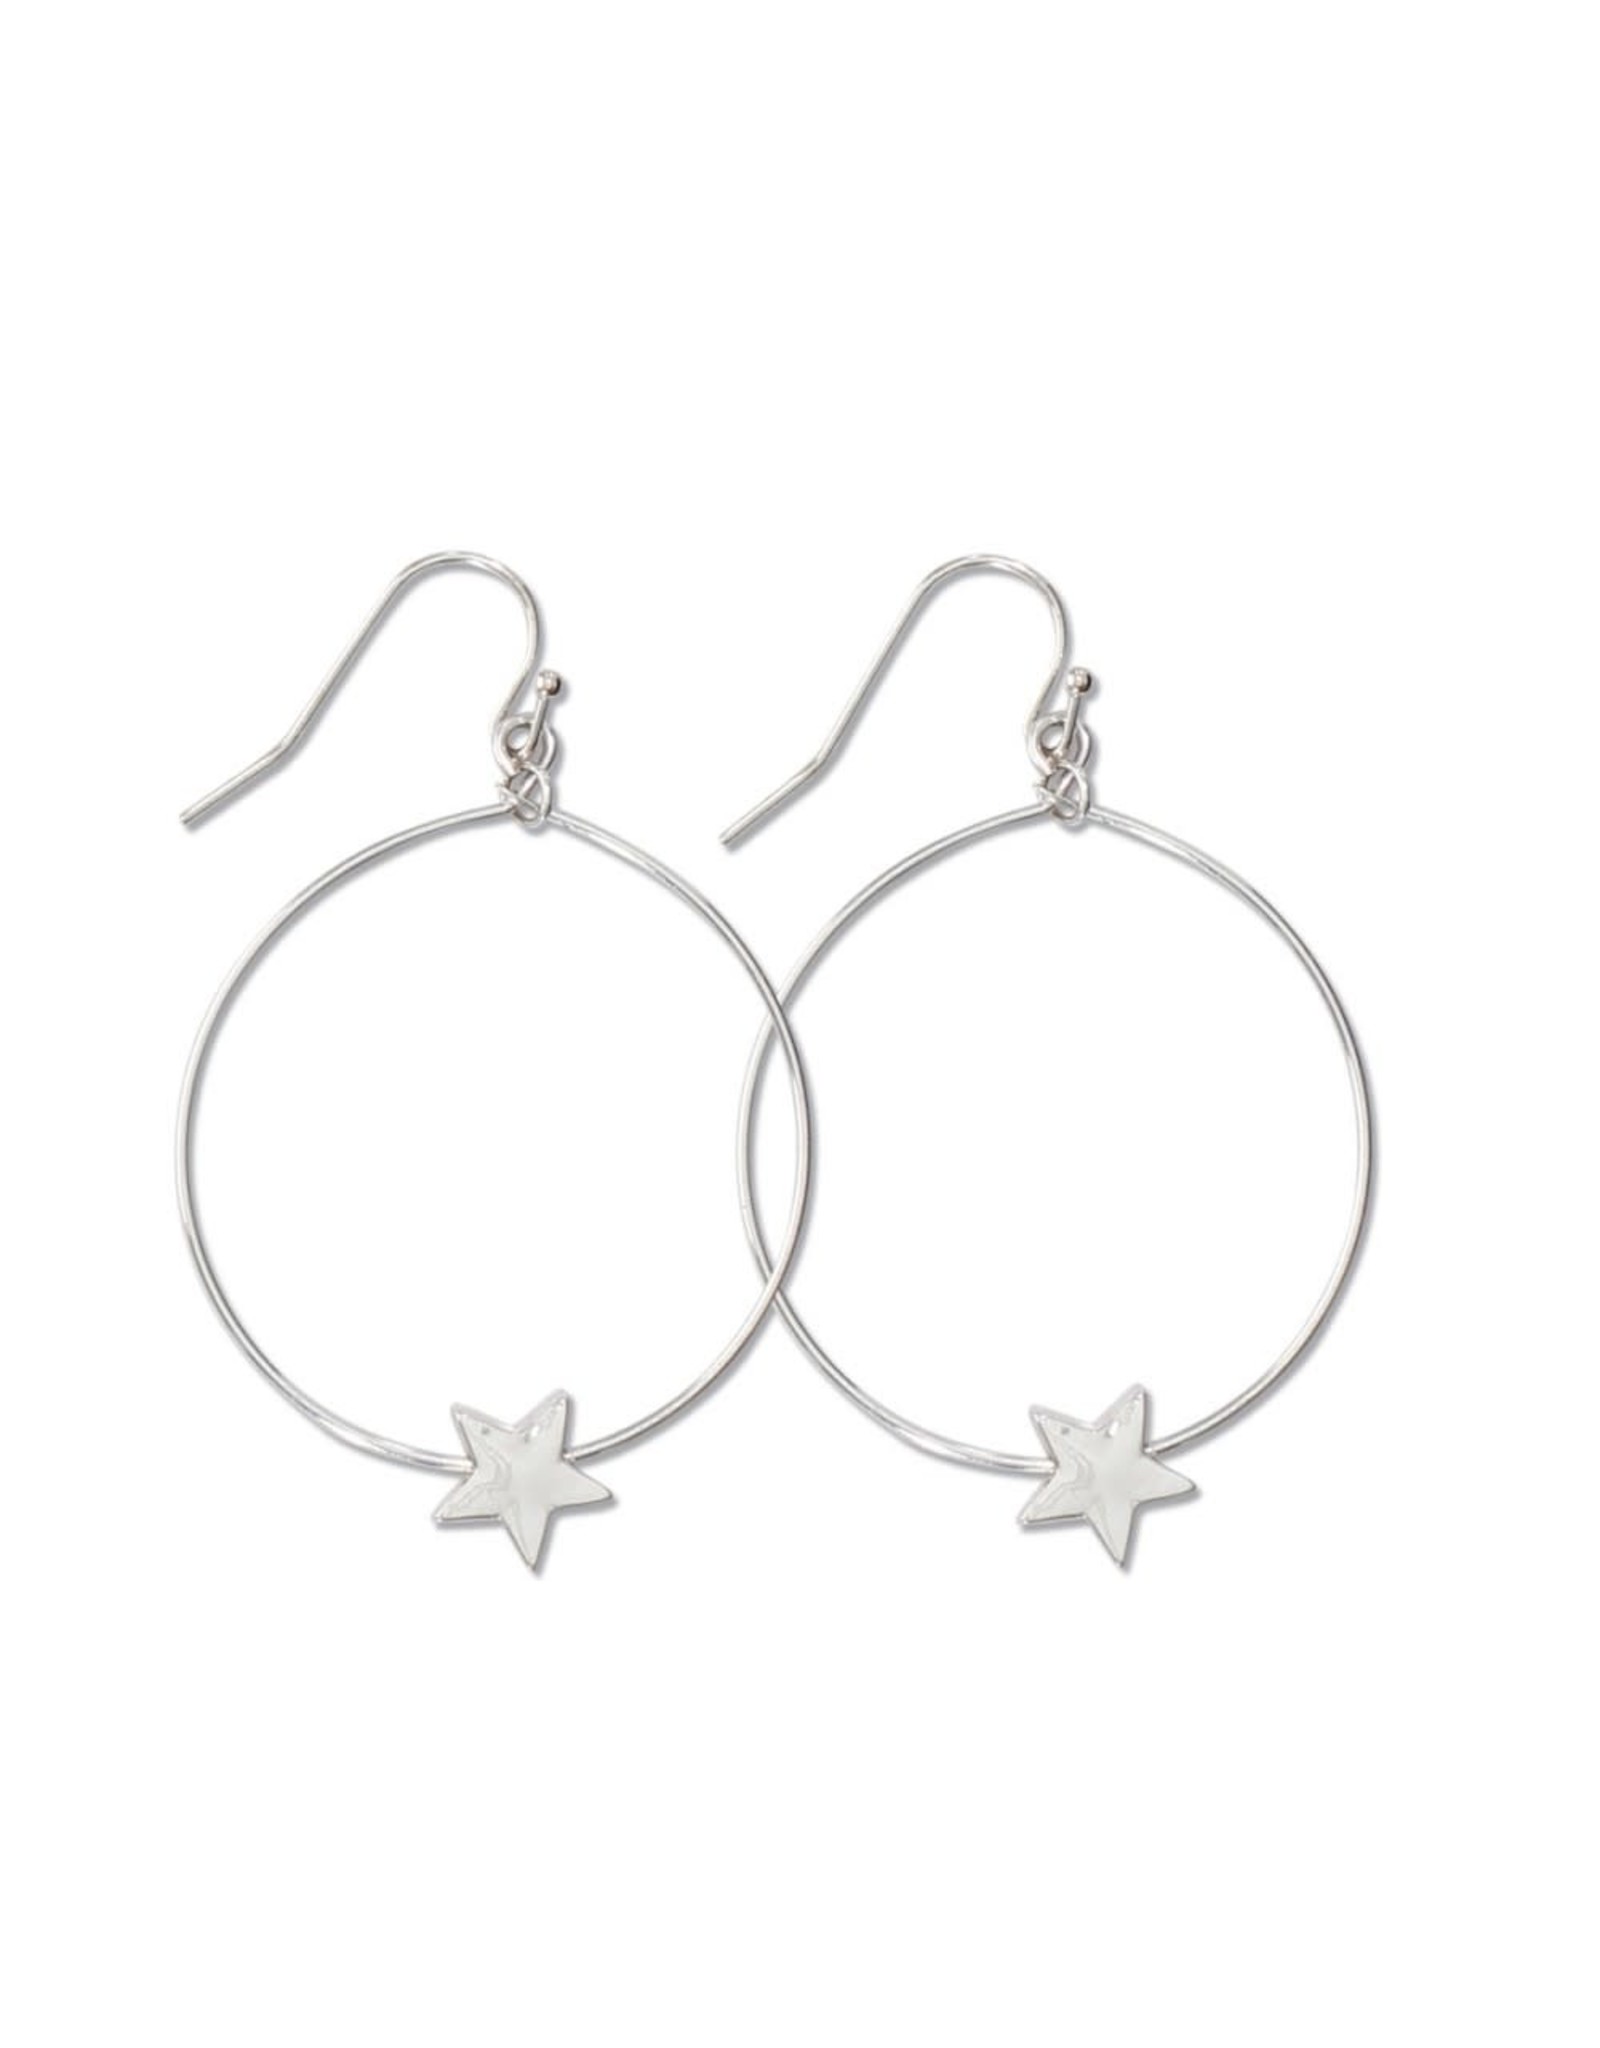 Periwinkle by Barlow Silver Hoops Star Earrings